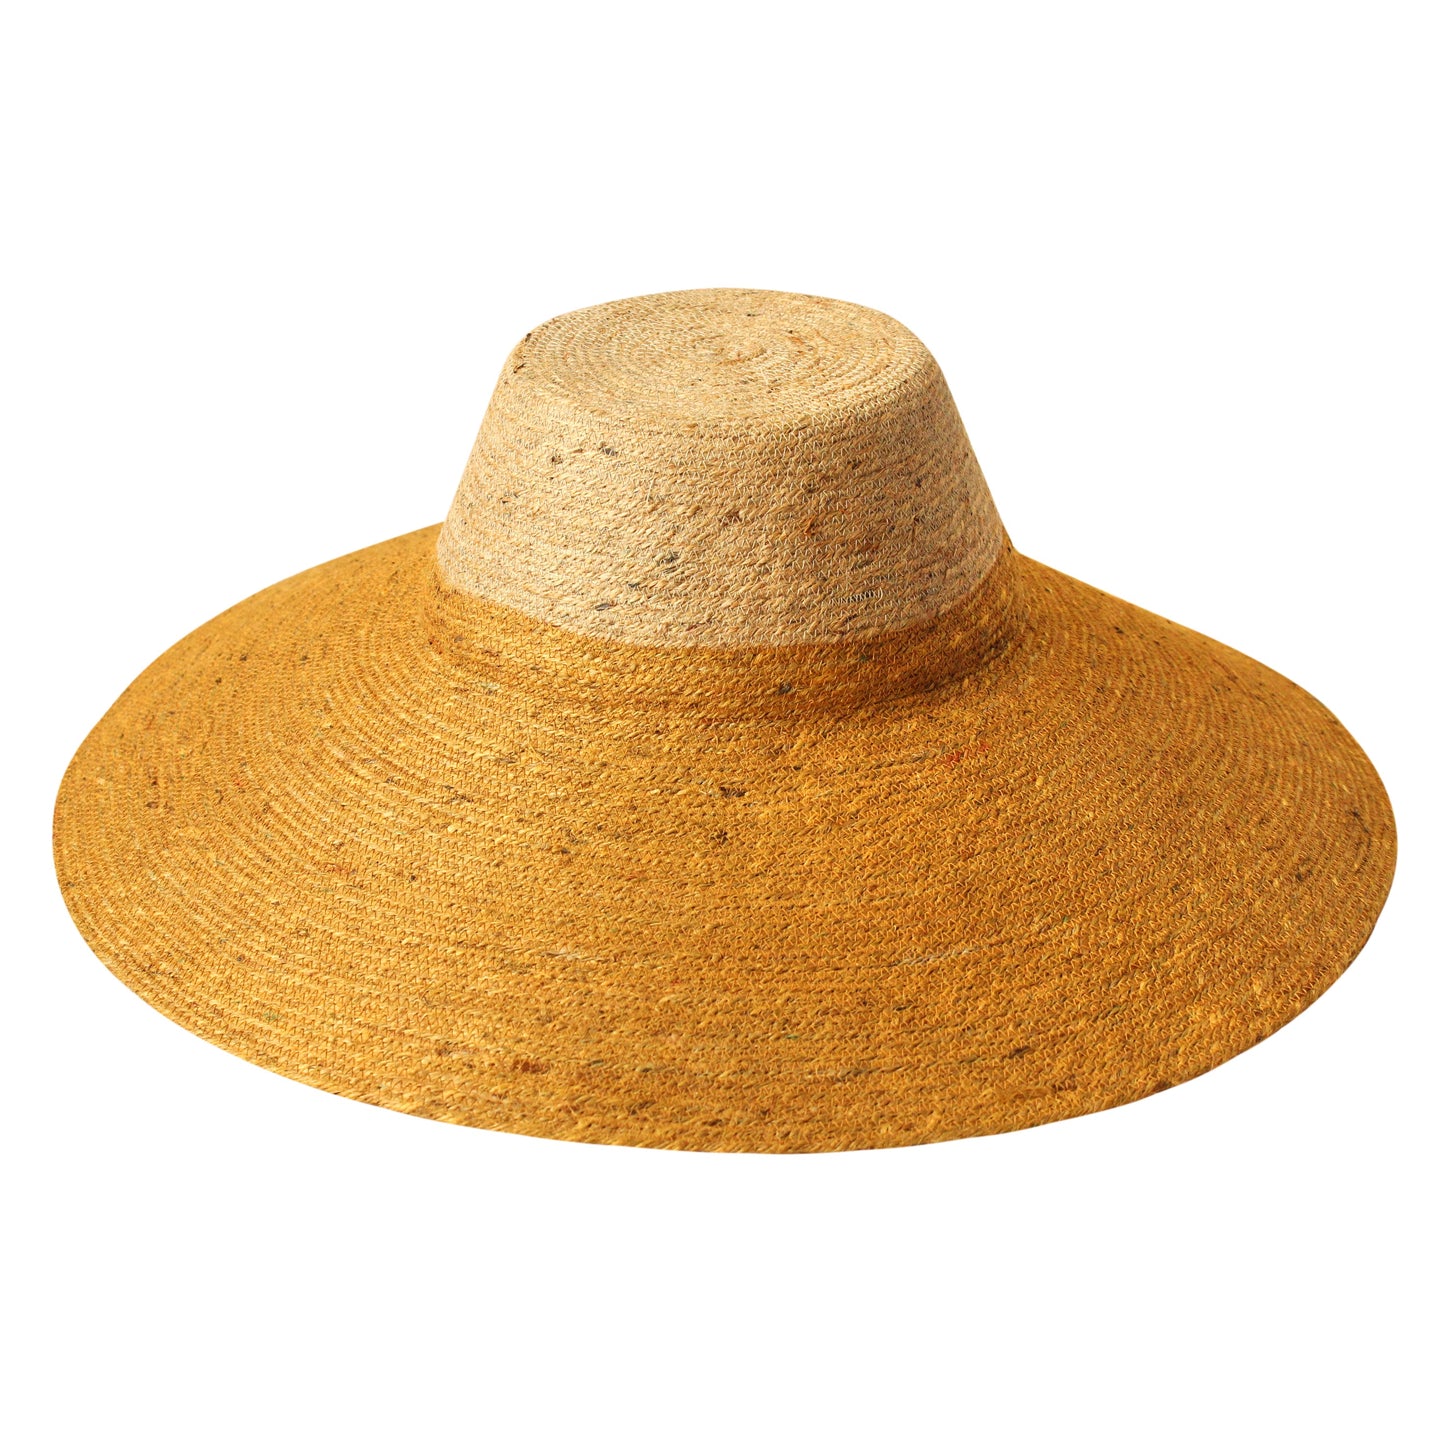 Jute Handwoven Straw Hat In Nude & Golden Yellow